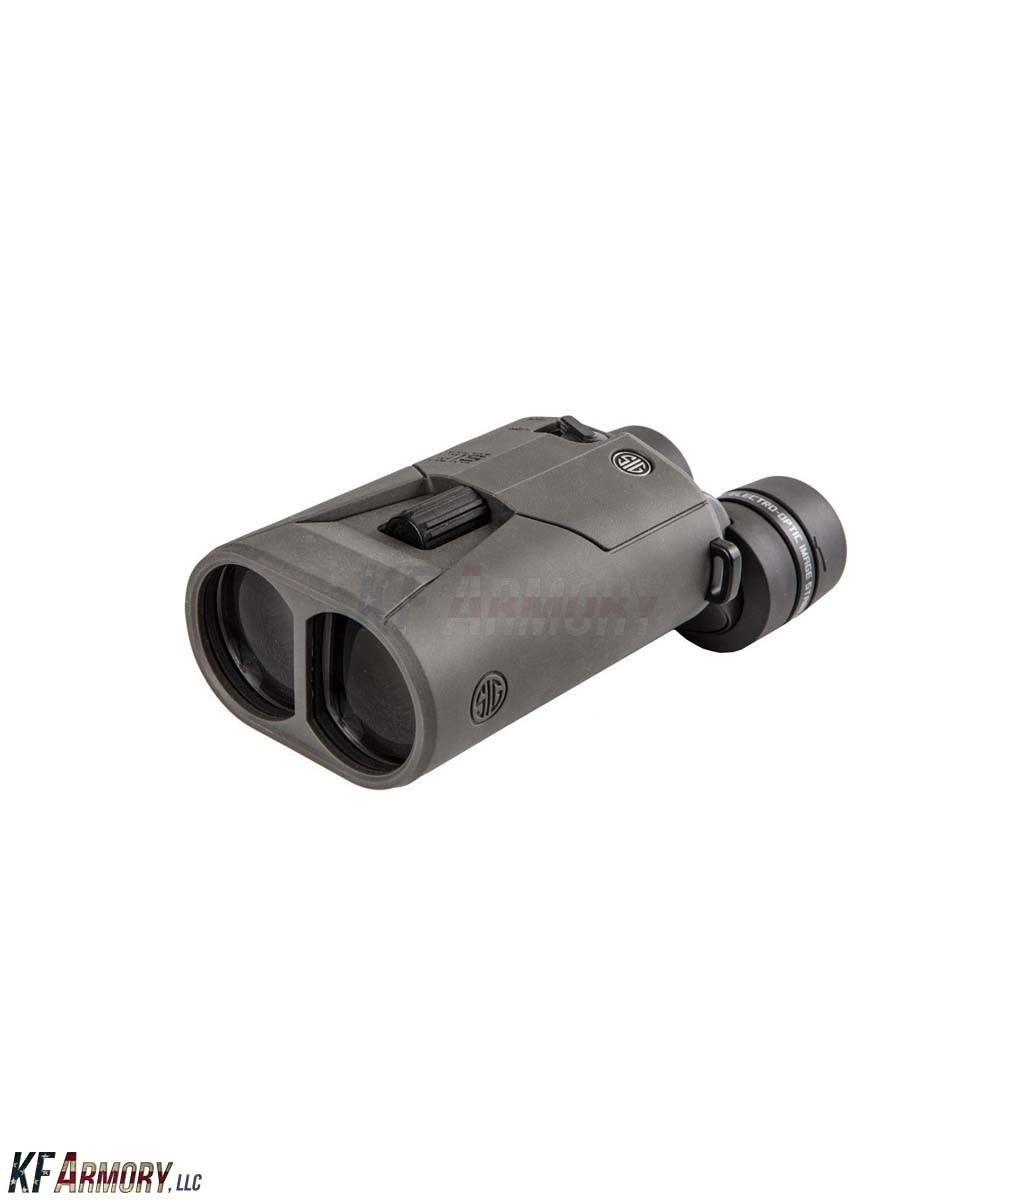 SIG Sauer ZULU6 16x42mm Image Stabilized Binocular – KF Armory, LLC